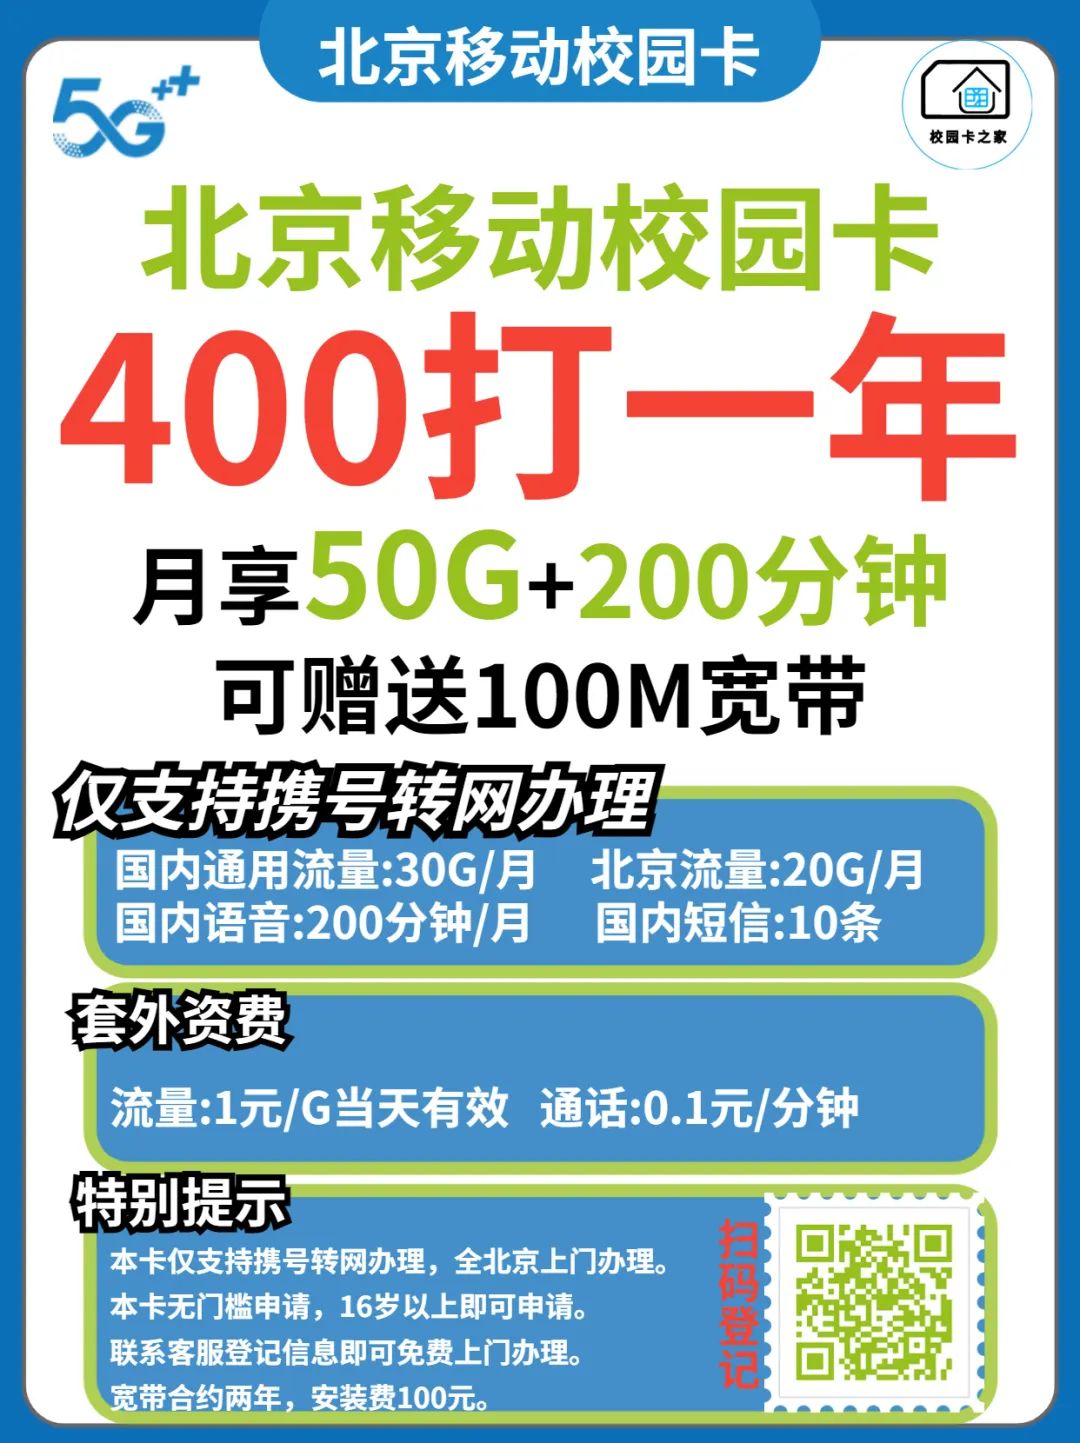 2023年北京移动老号低消爱家融合宽带优惠活动资费一览表插图7